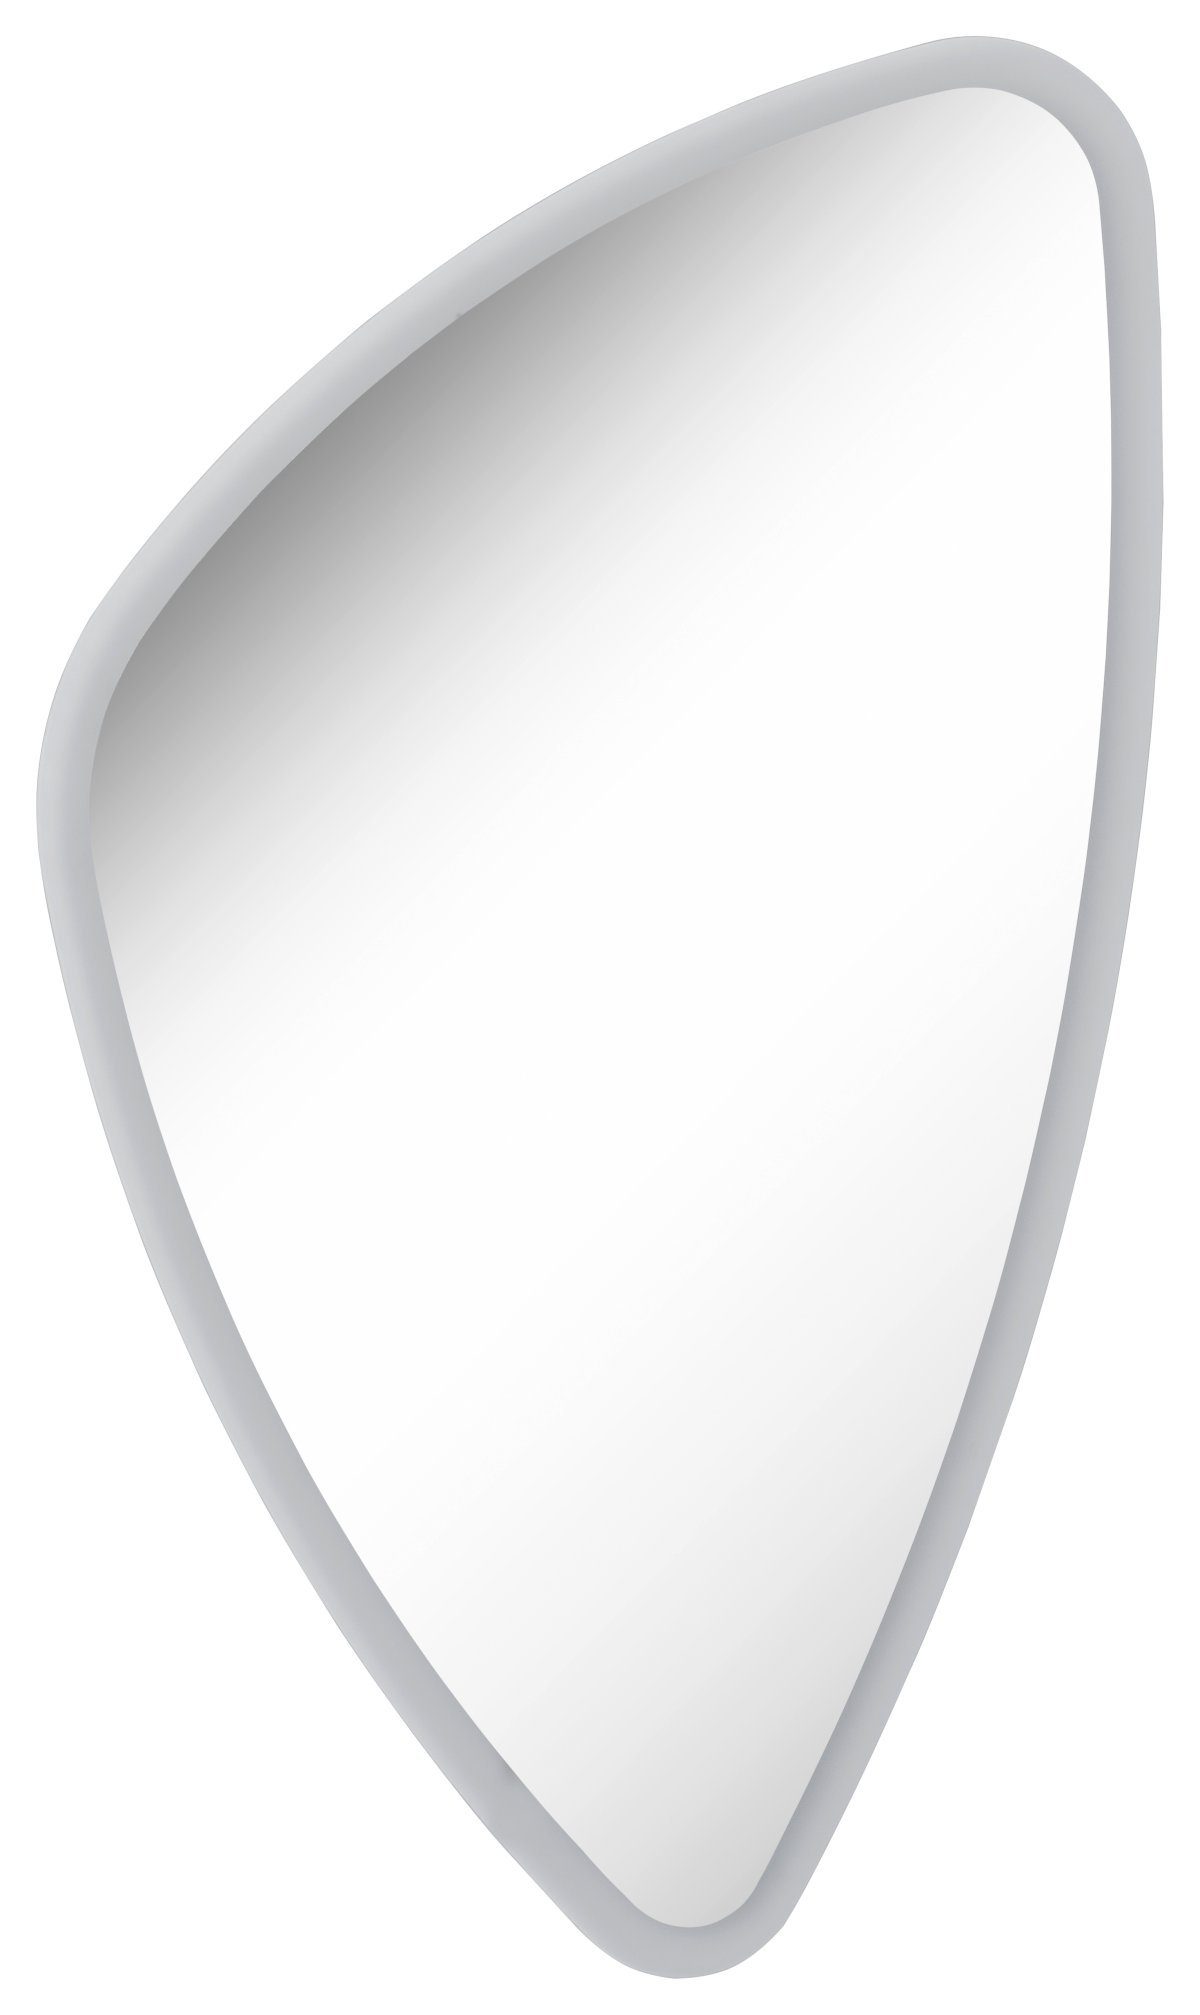 FACKELMANN Badspiegel Mirrors Spiegel organic / umlaufende LED-Beleuchtung / Breite 56 cm